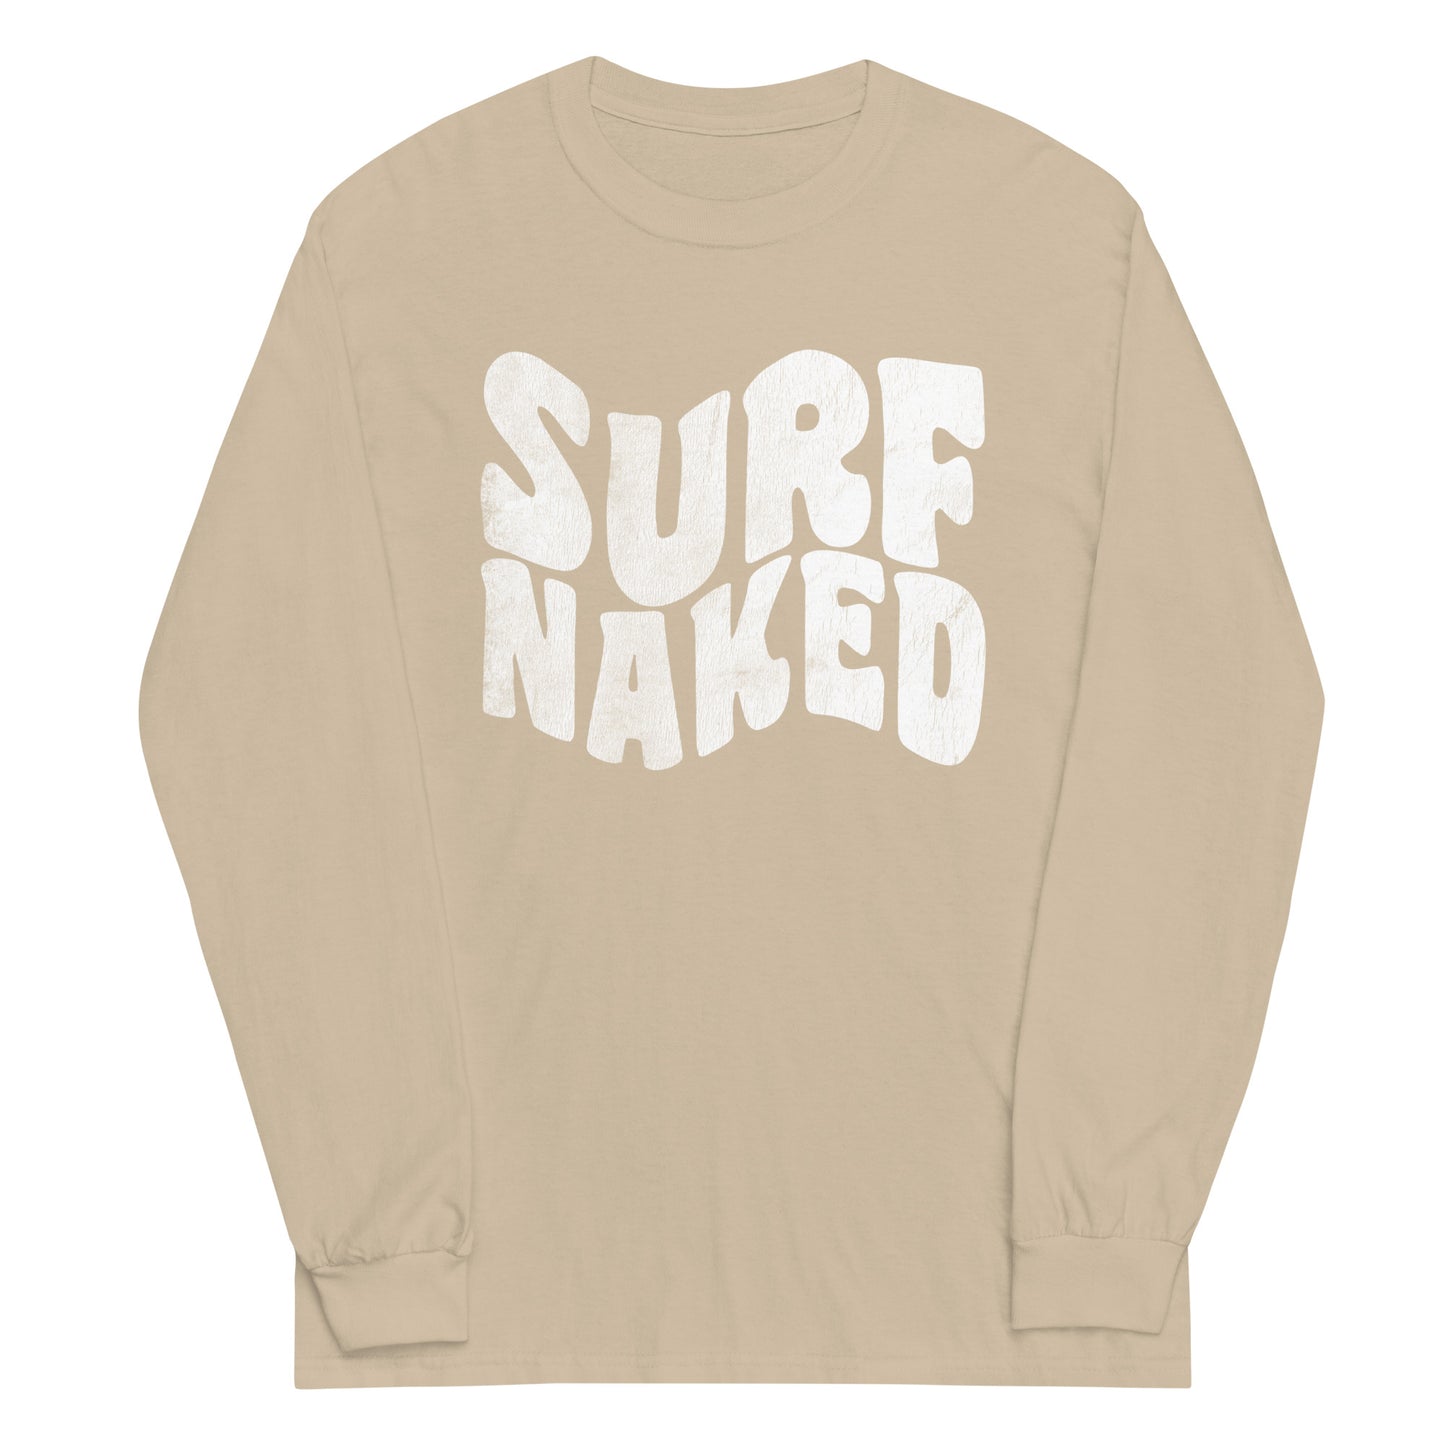 Retro Surf Naked Long Sleeve Shirt